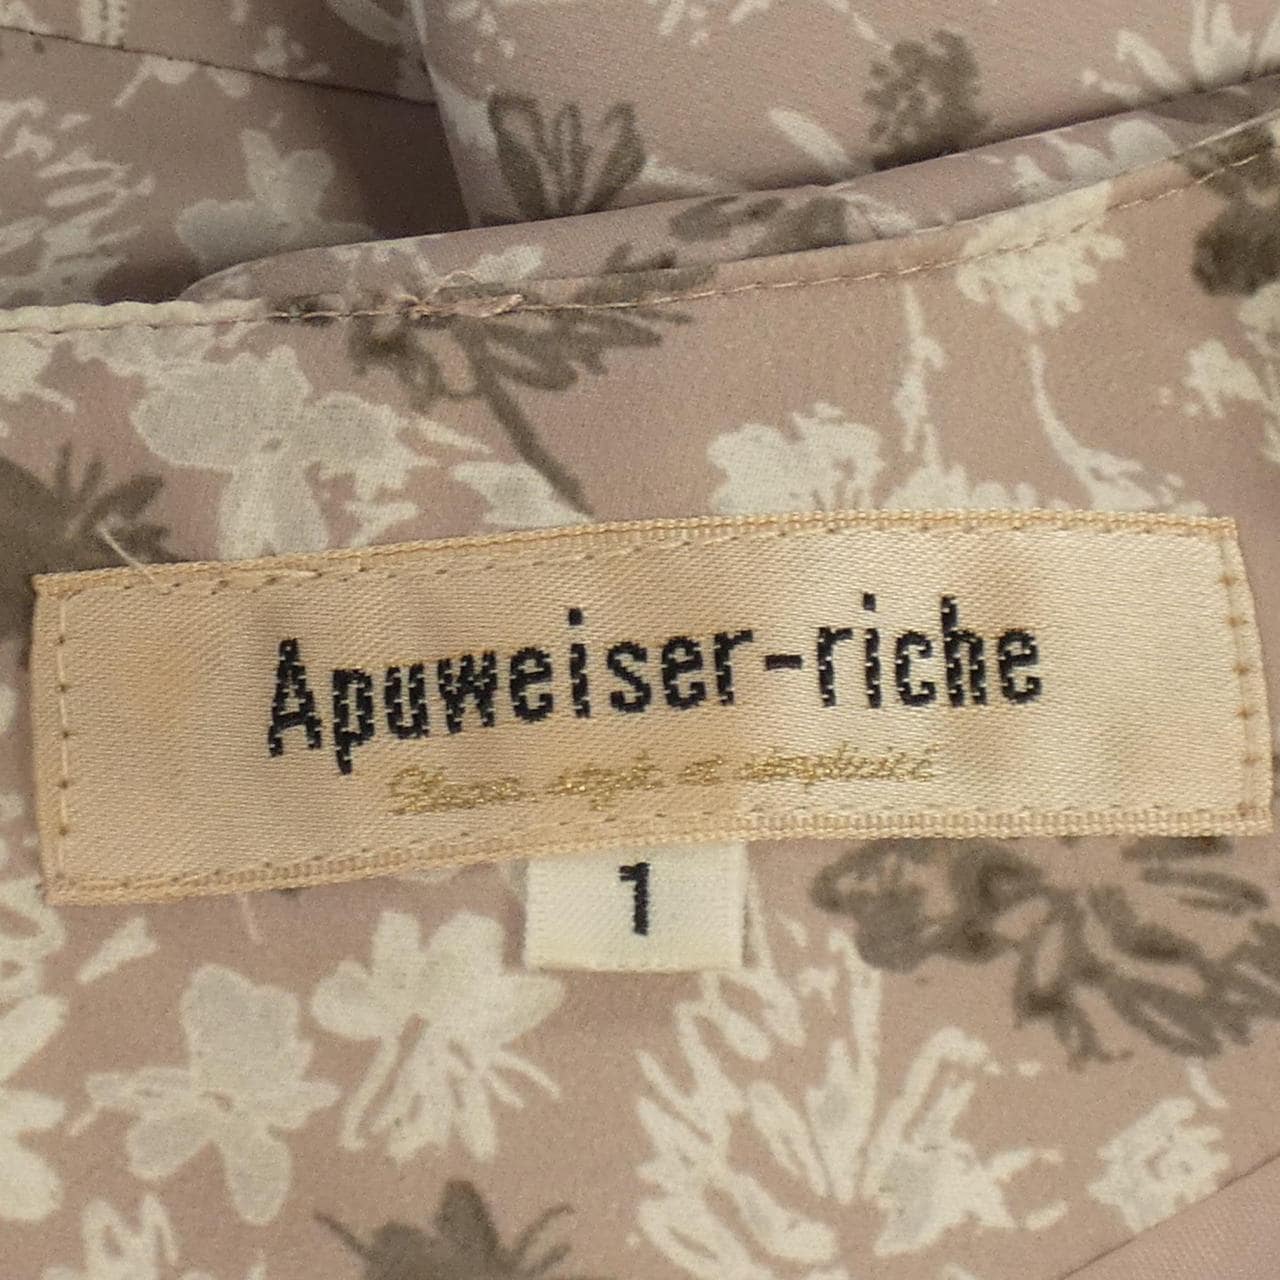 Apuweiser-riche连衣裙